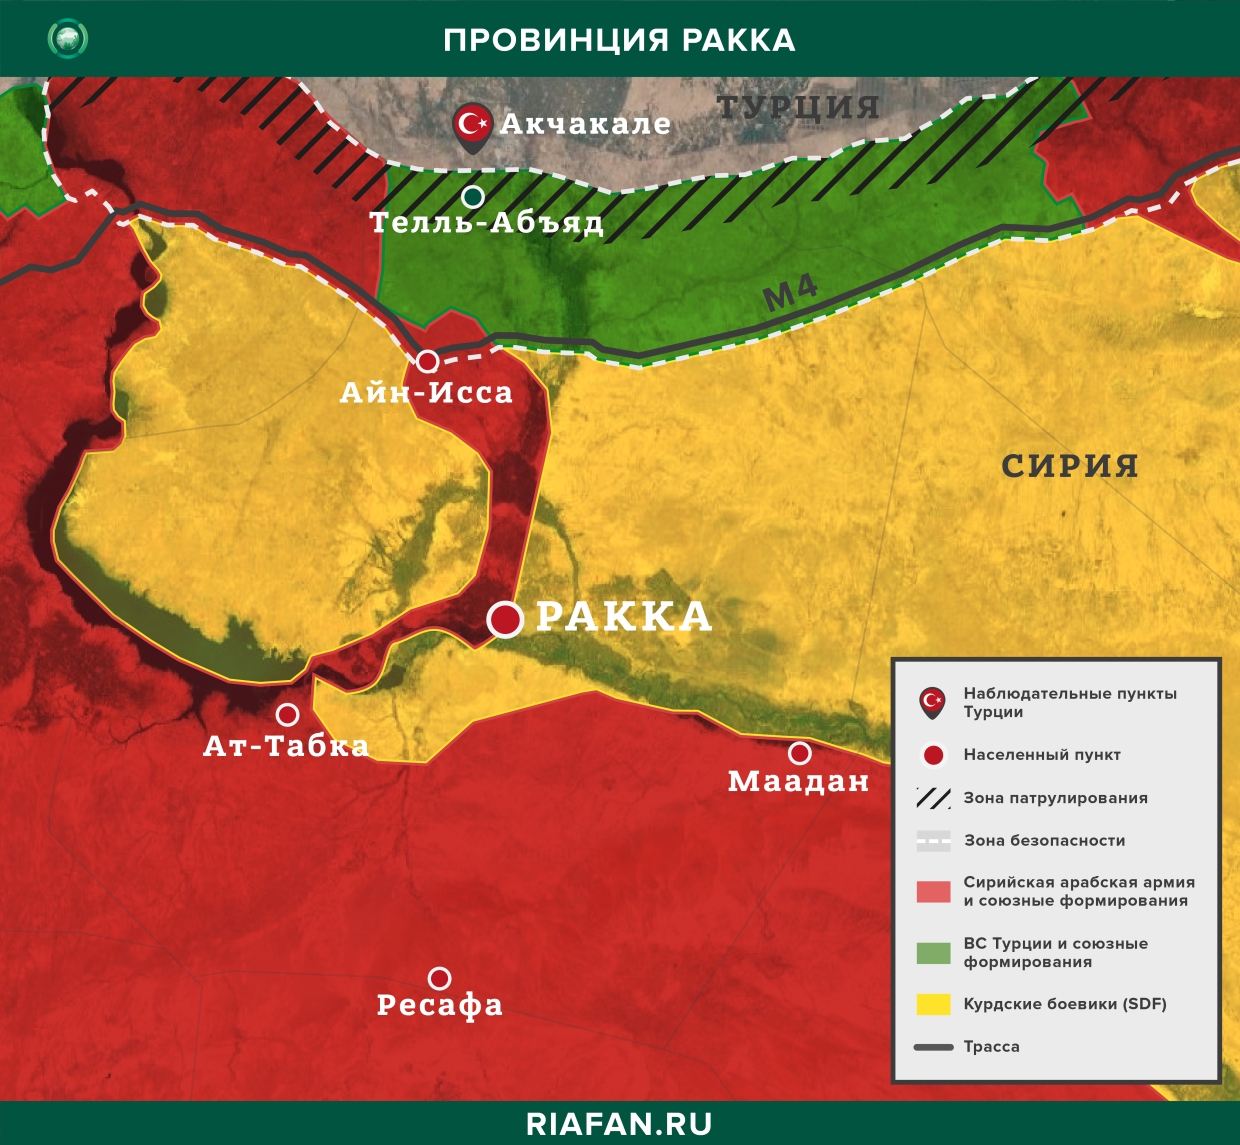 叙利亚结果 3 八月 06.00: 伊斯兰国武装分子在代尔祖尔杀死部落酋长